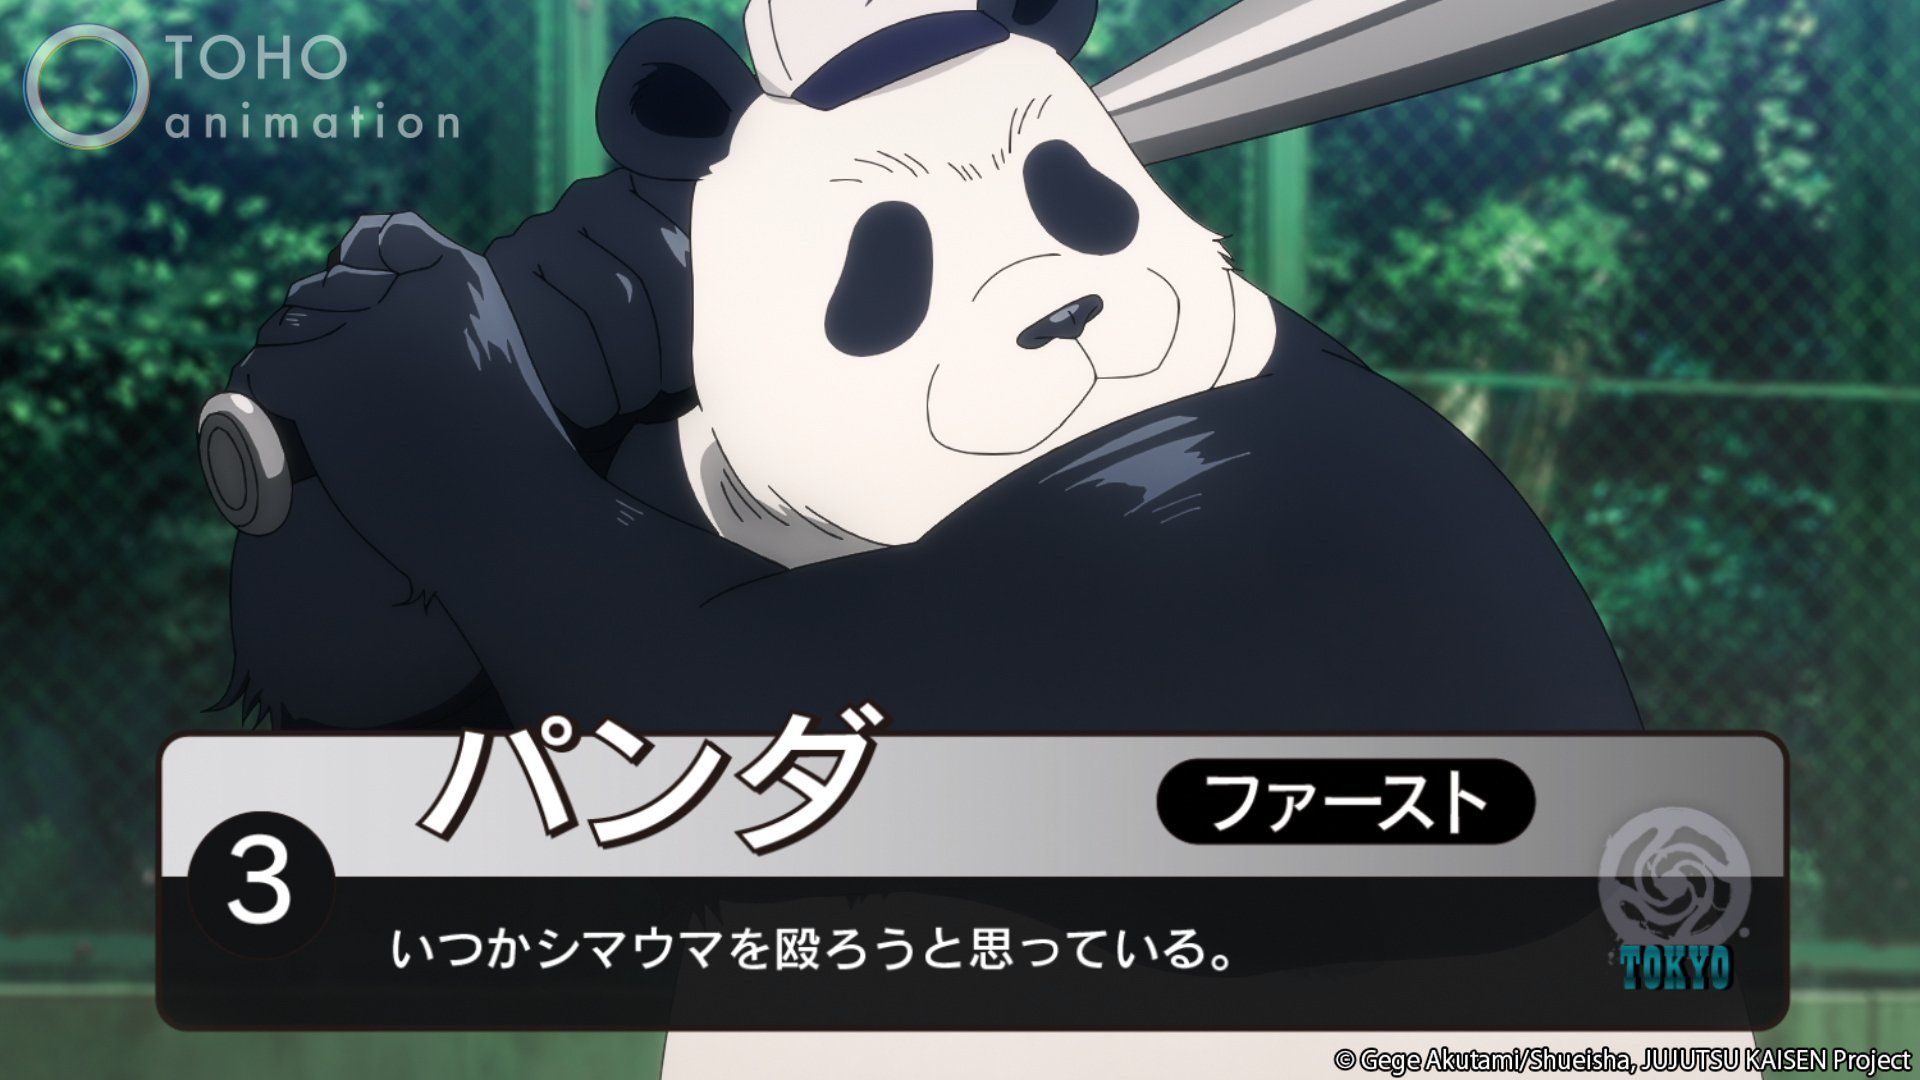 JUJUTSU KAISEN answer is Panda